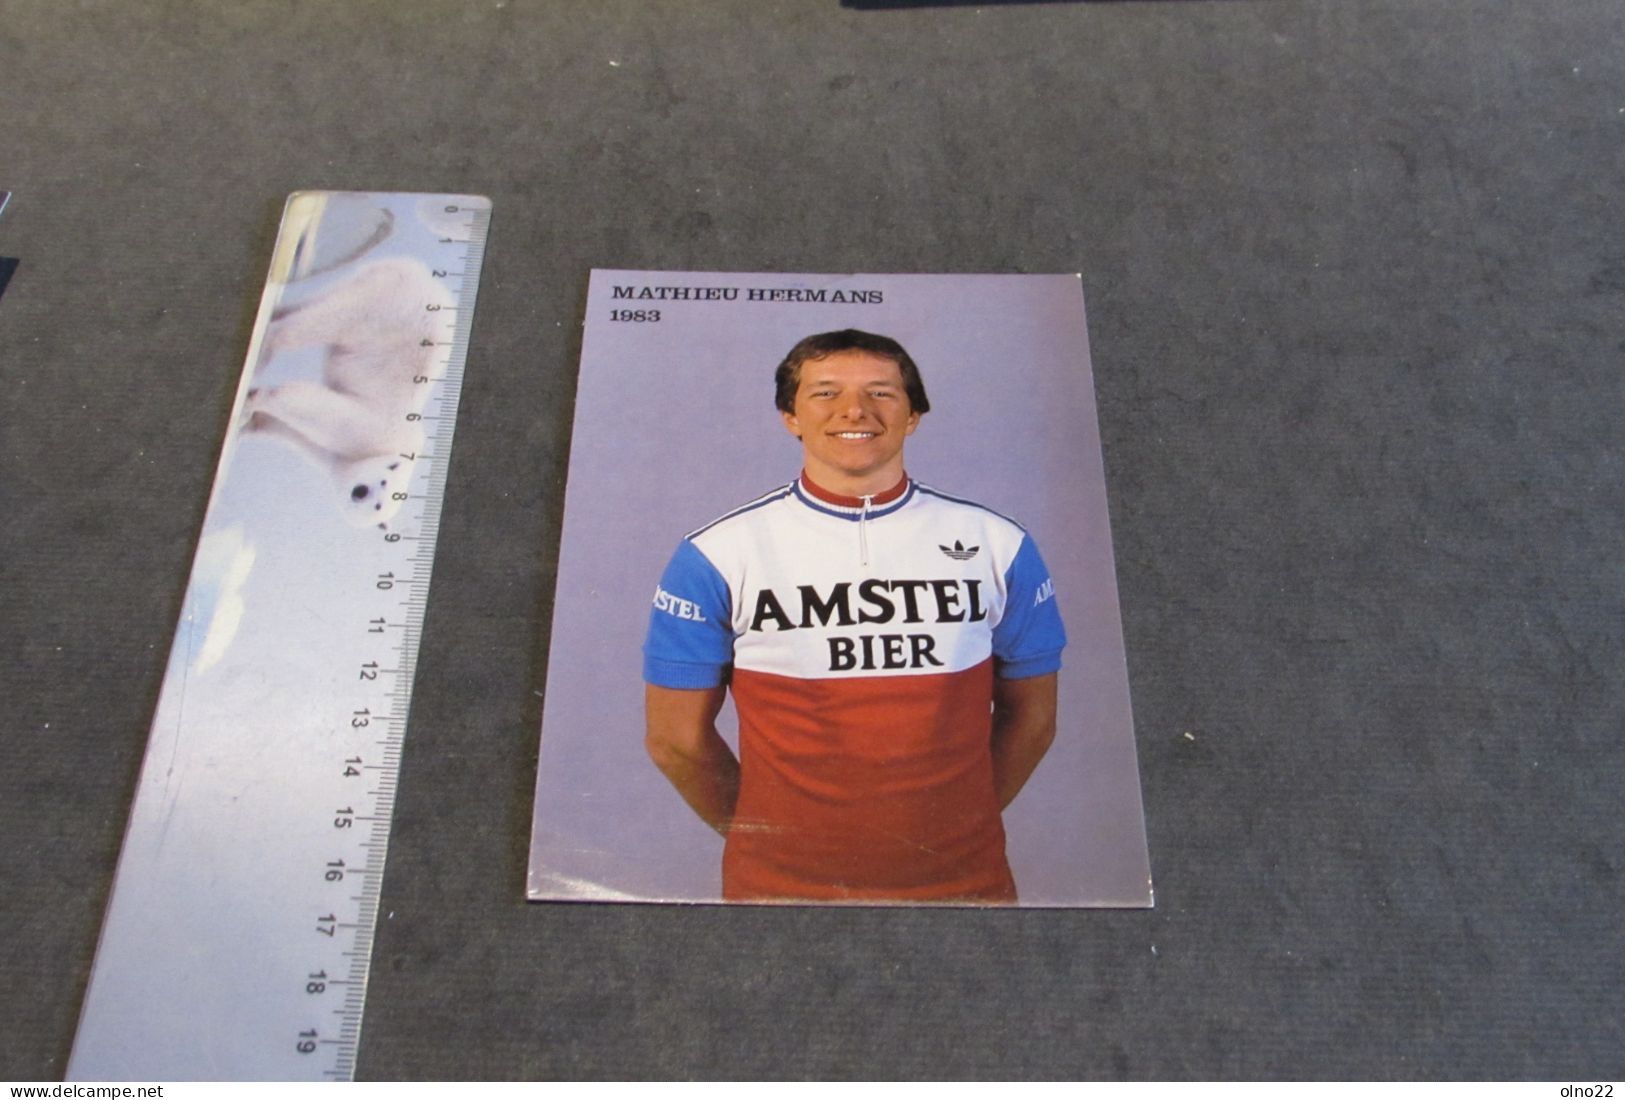 MATHIEU HERMANS 1983  - AMSTEL BIER - PHOTO COULEURS - VOIR SCANS - Sporters